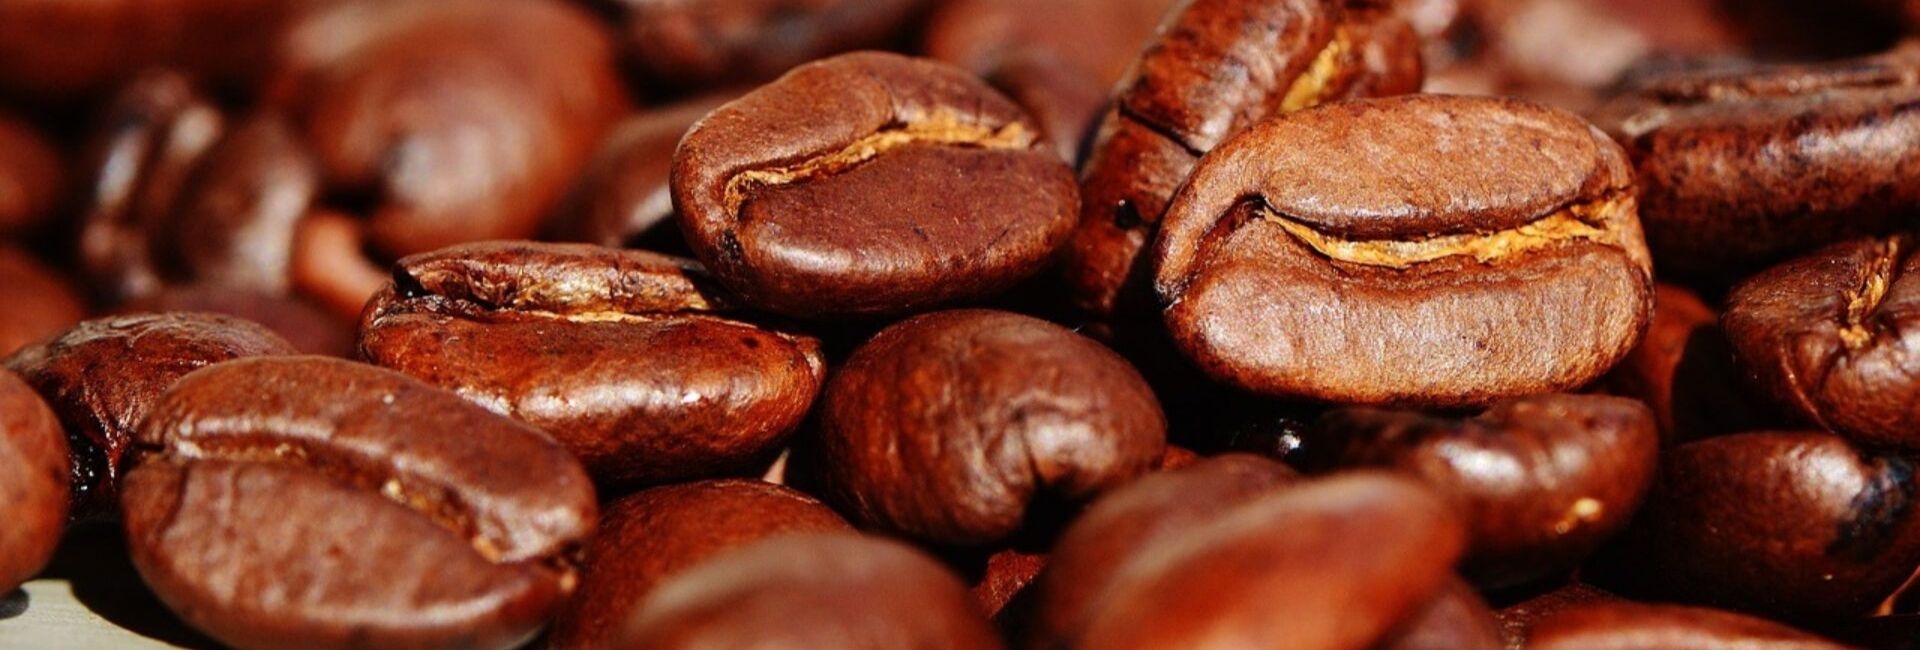 graines de café